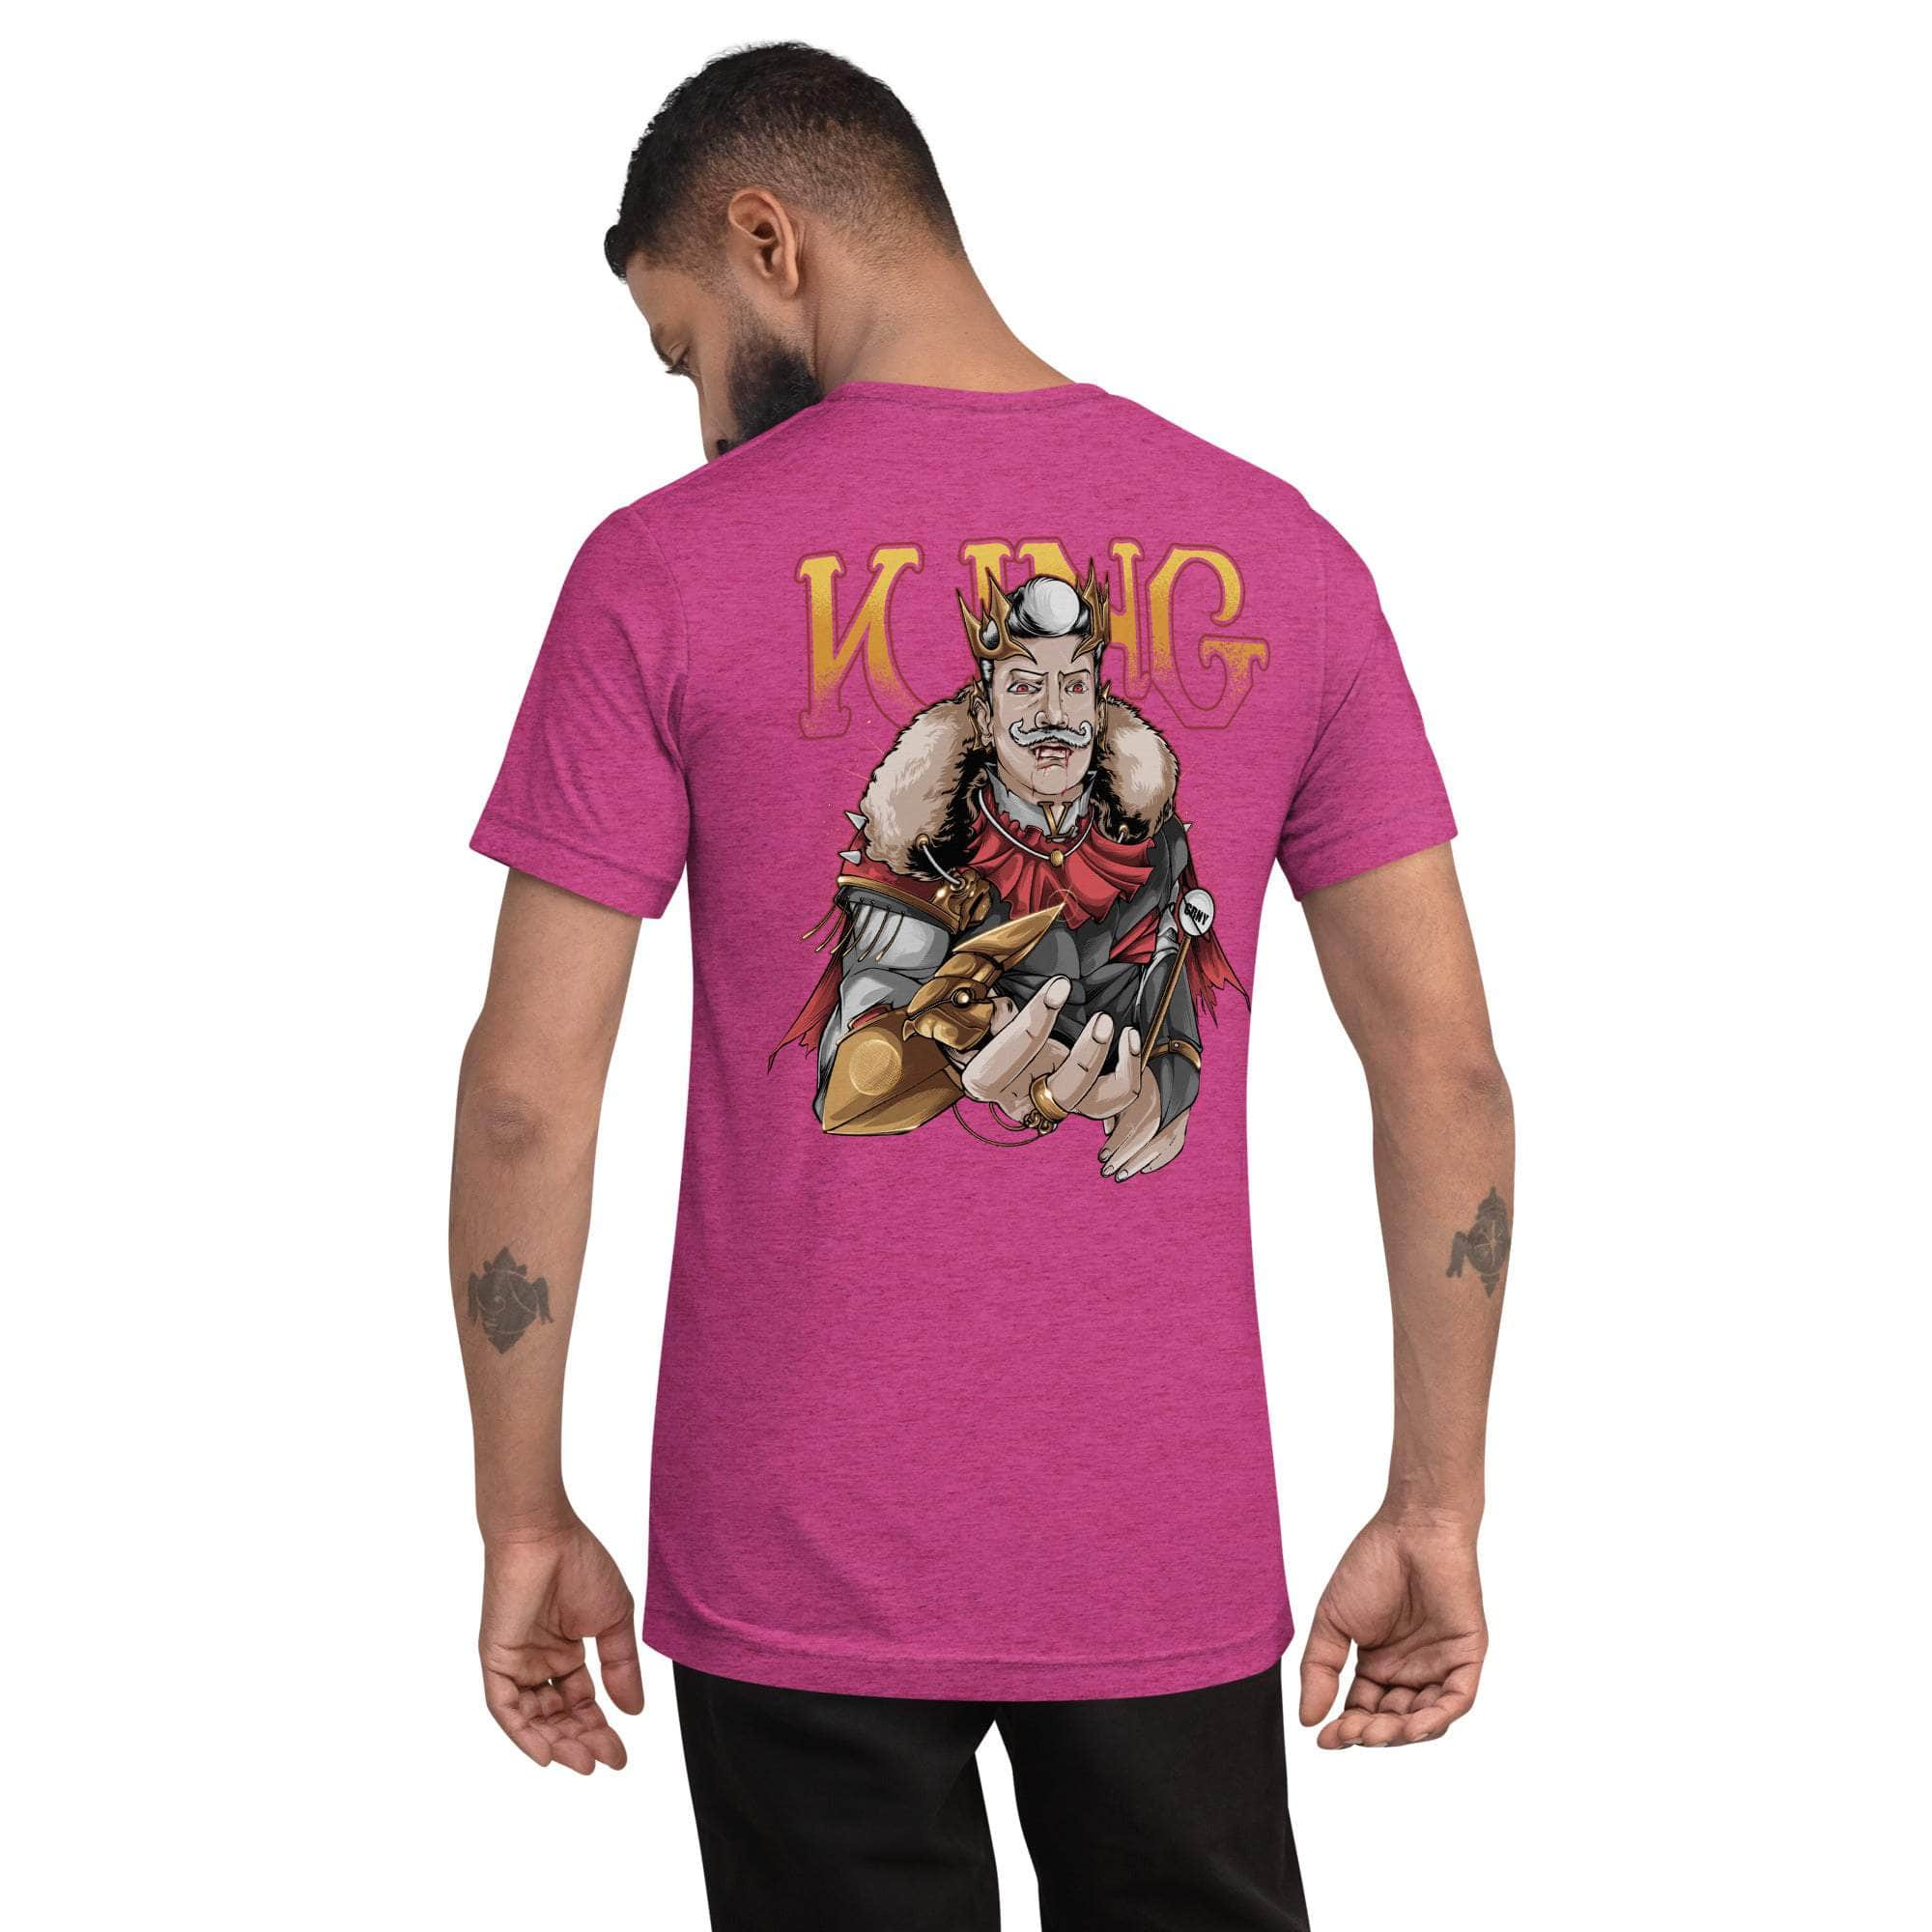 GBNY Berry Triblend / XS Vamp Life X GBNY "Vamp King" T-shirt - Men's 8741511_6480